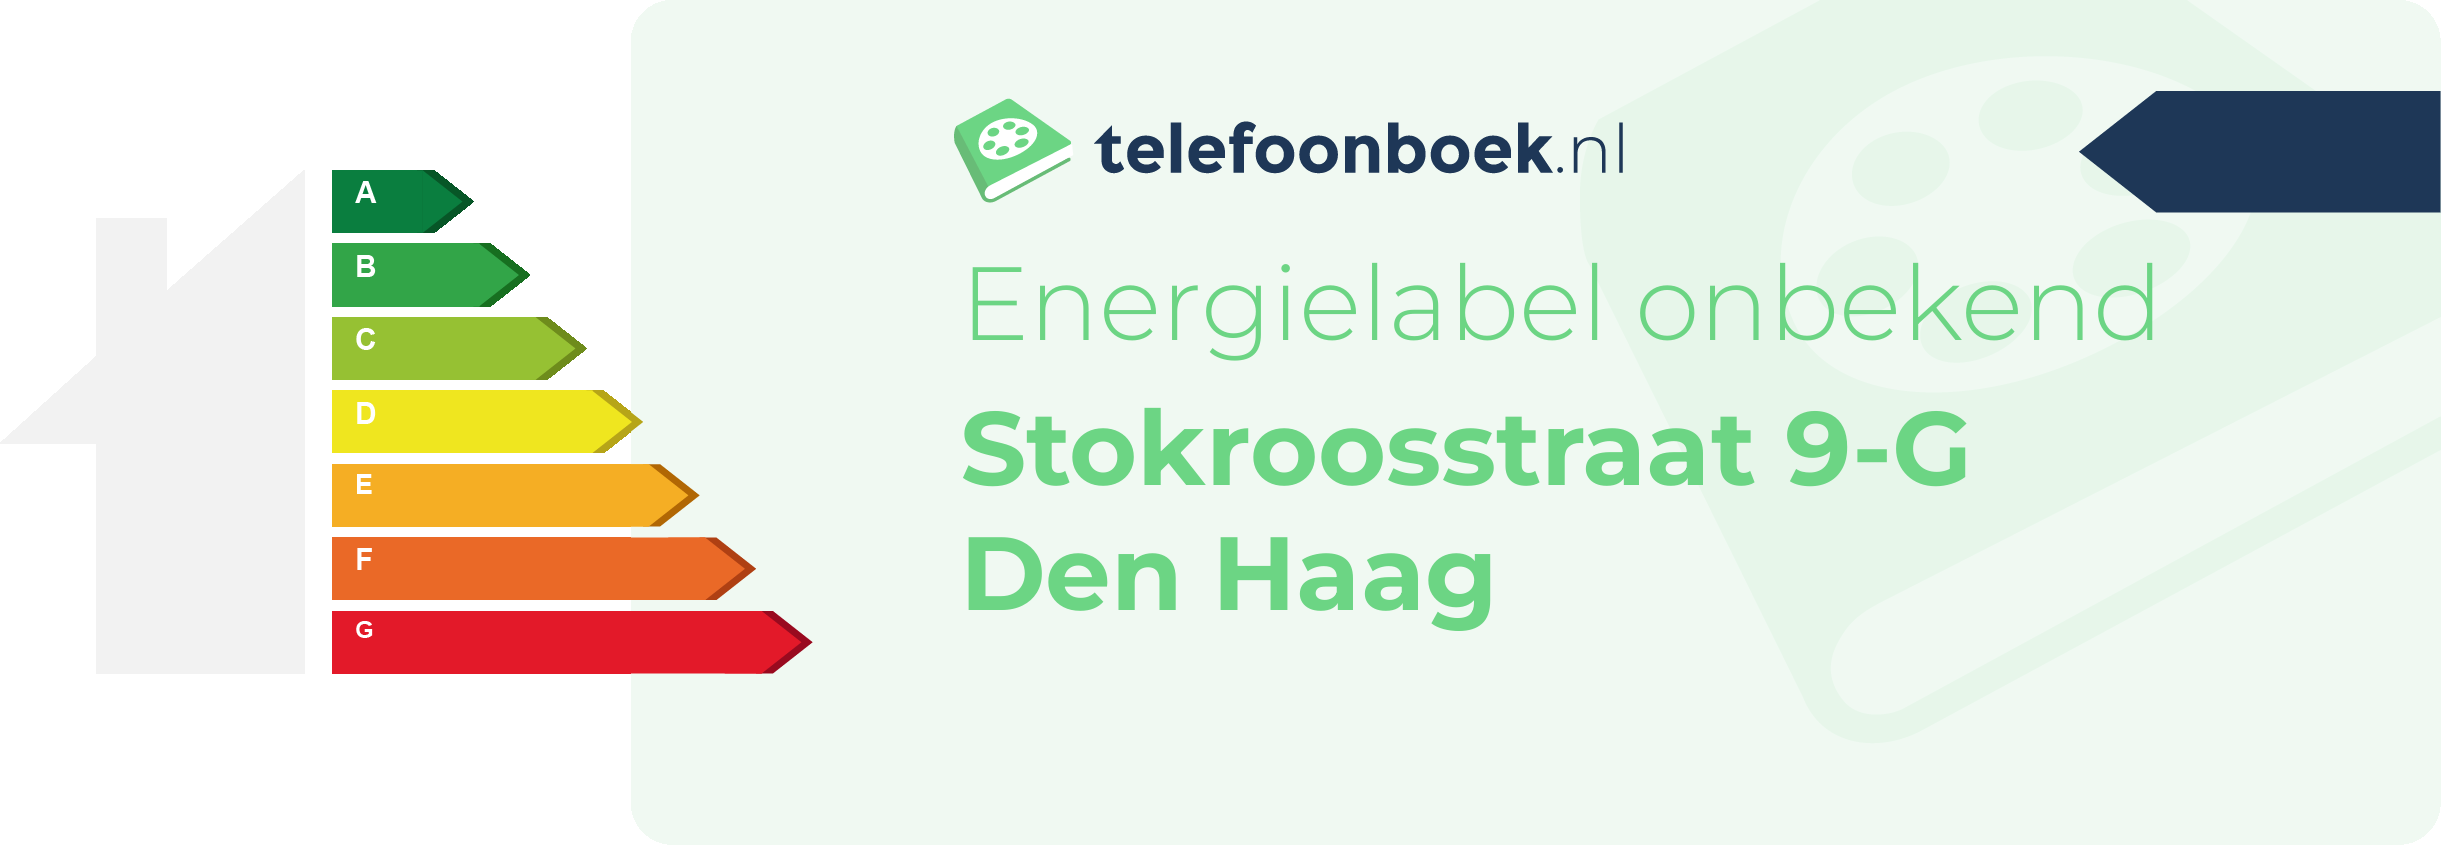 Energielabel Stokroosstraat 9-G Den Haag